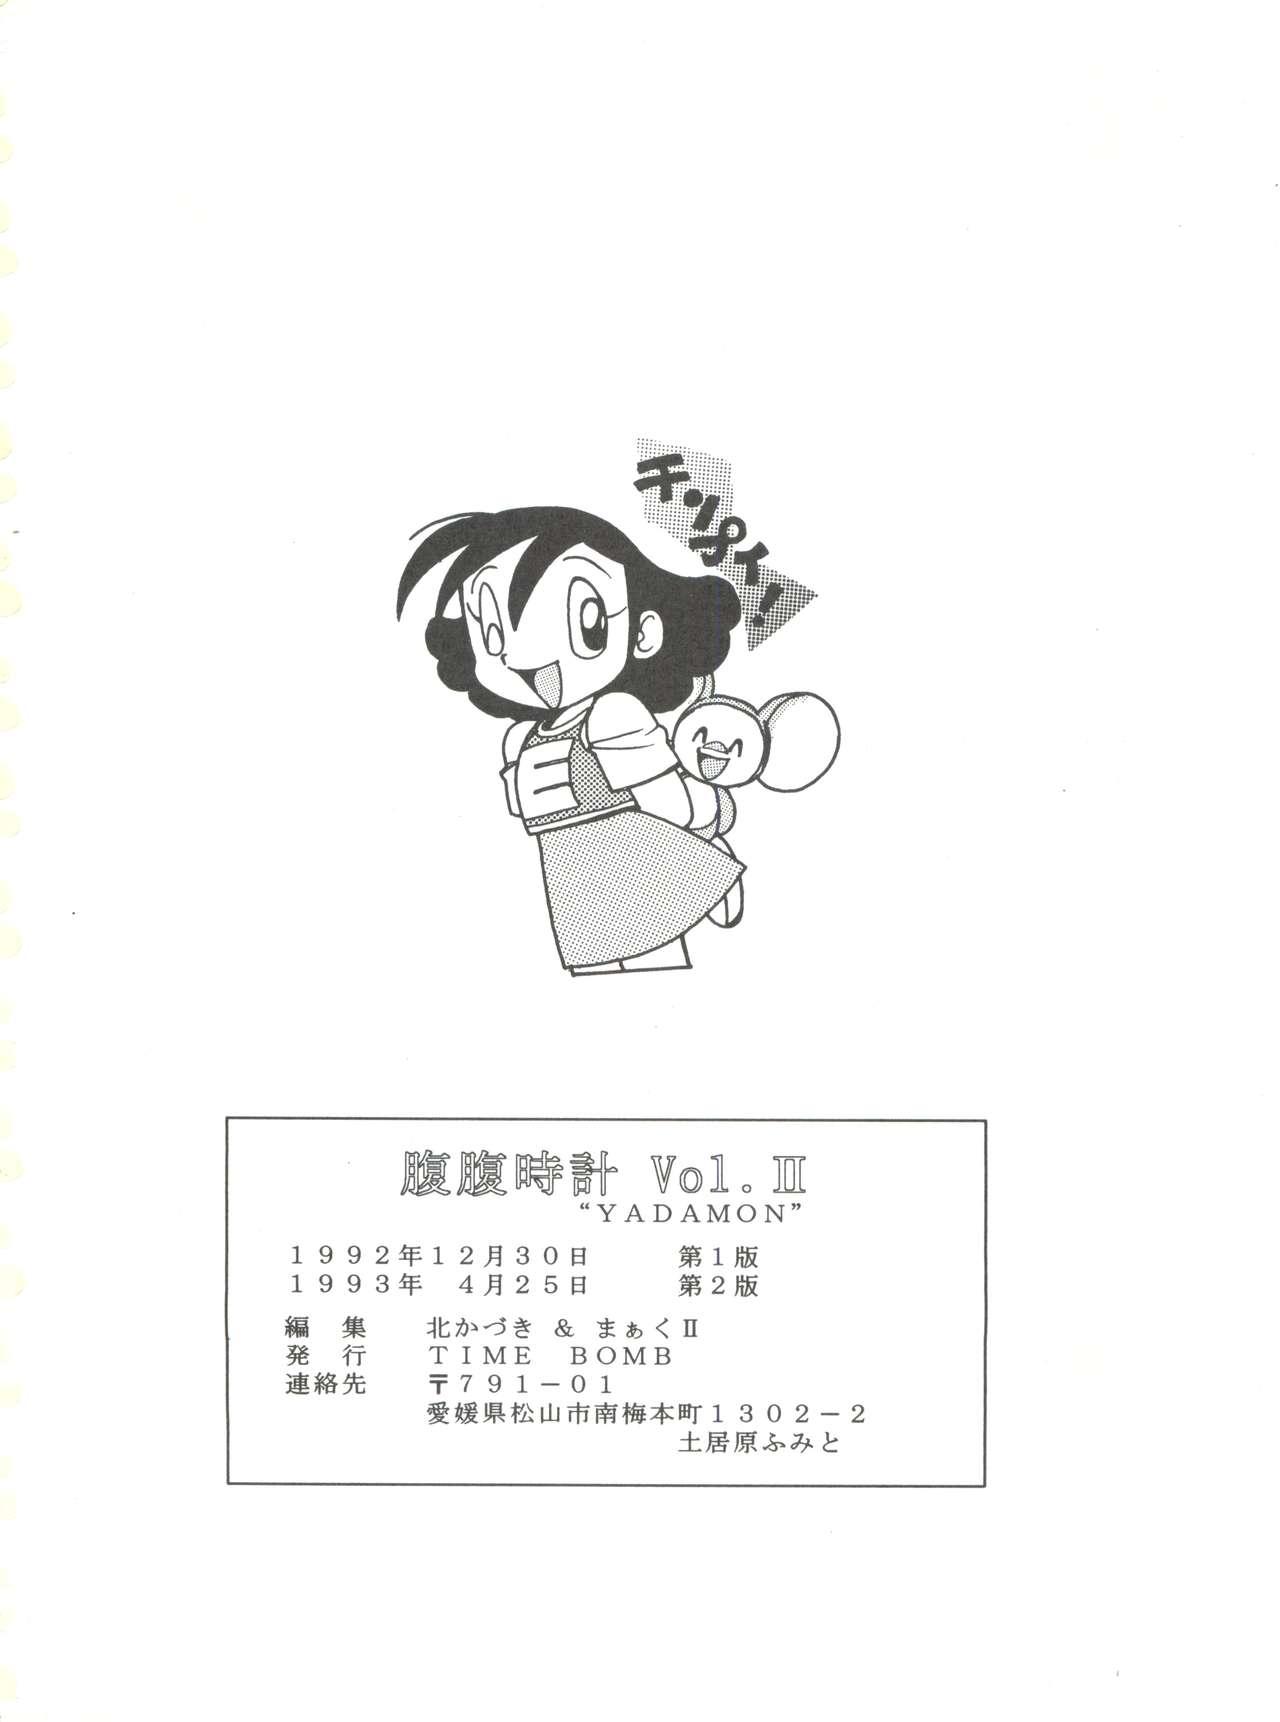 Public Fuck Hara Hara Dokei Vol. II "Yadamon" - Sailor moon Yadamon Behind - Page 46